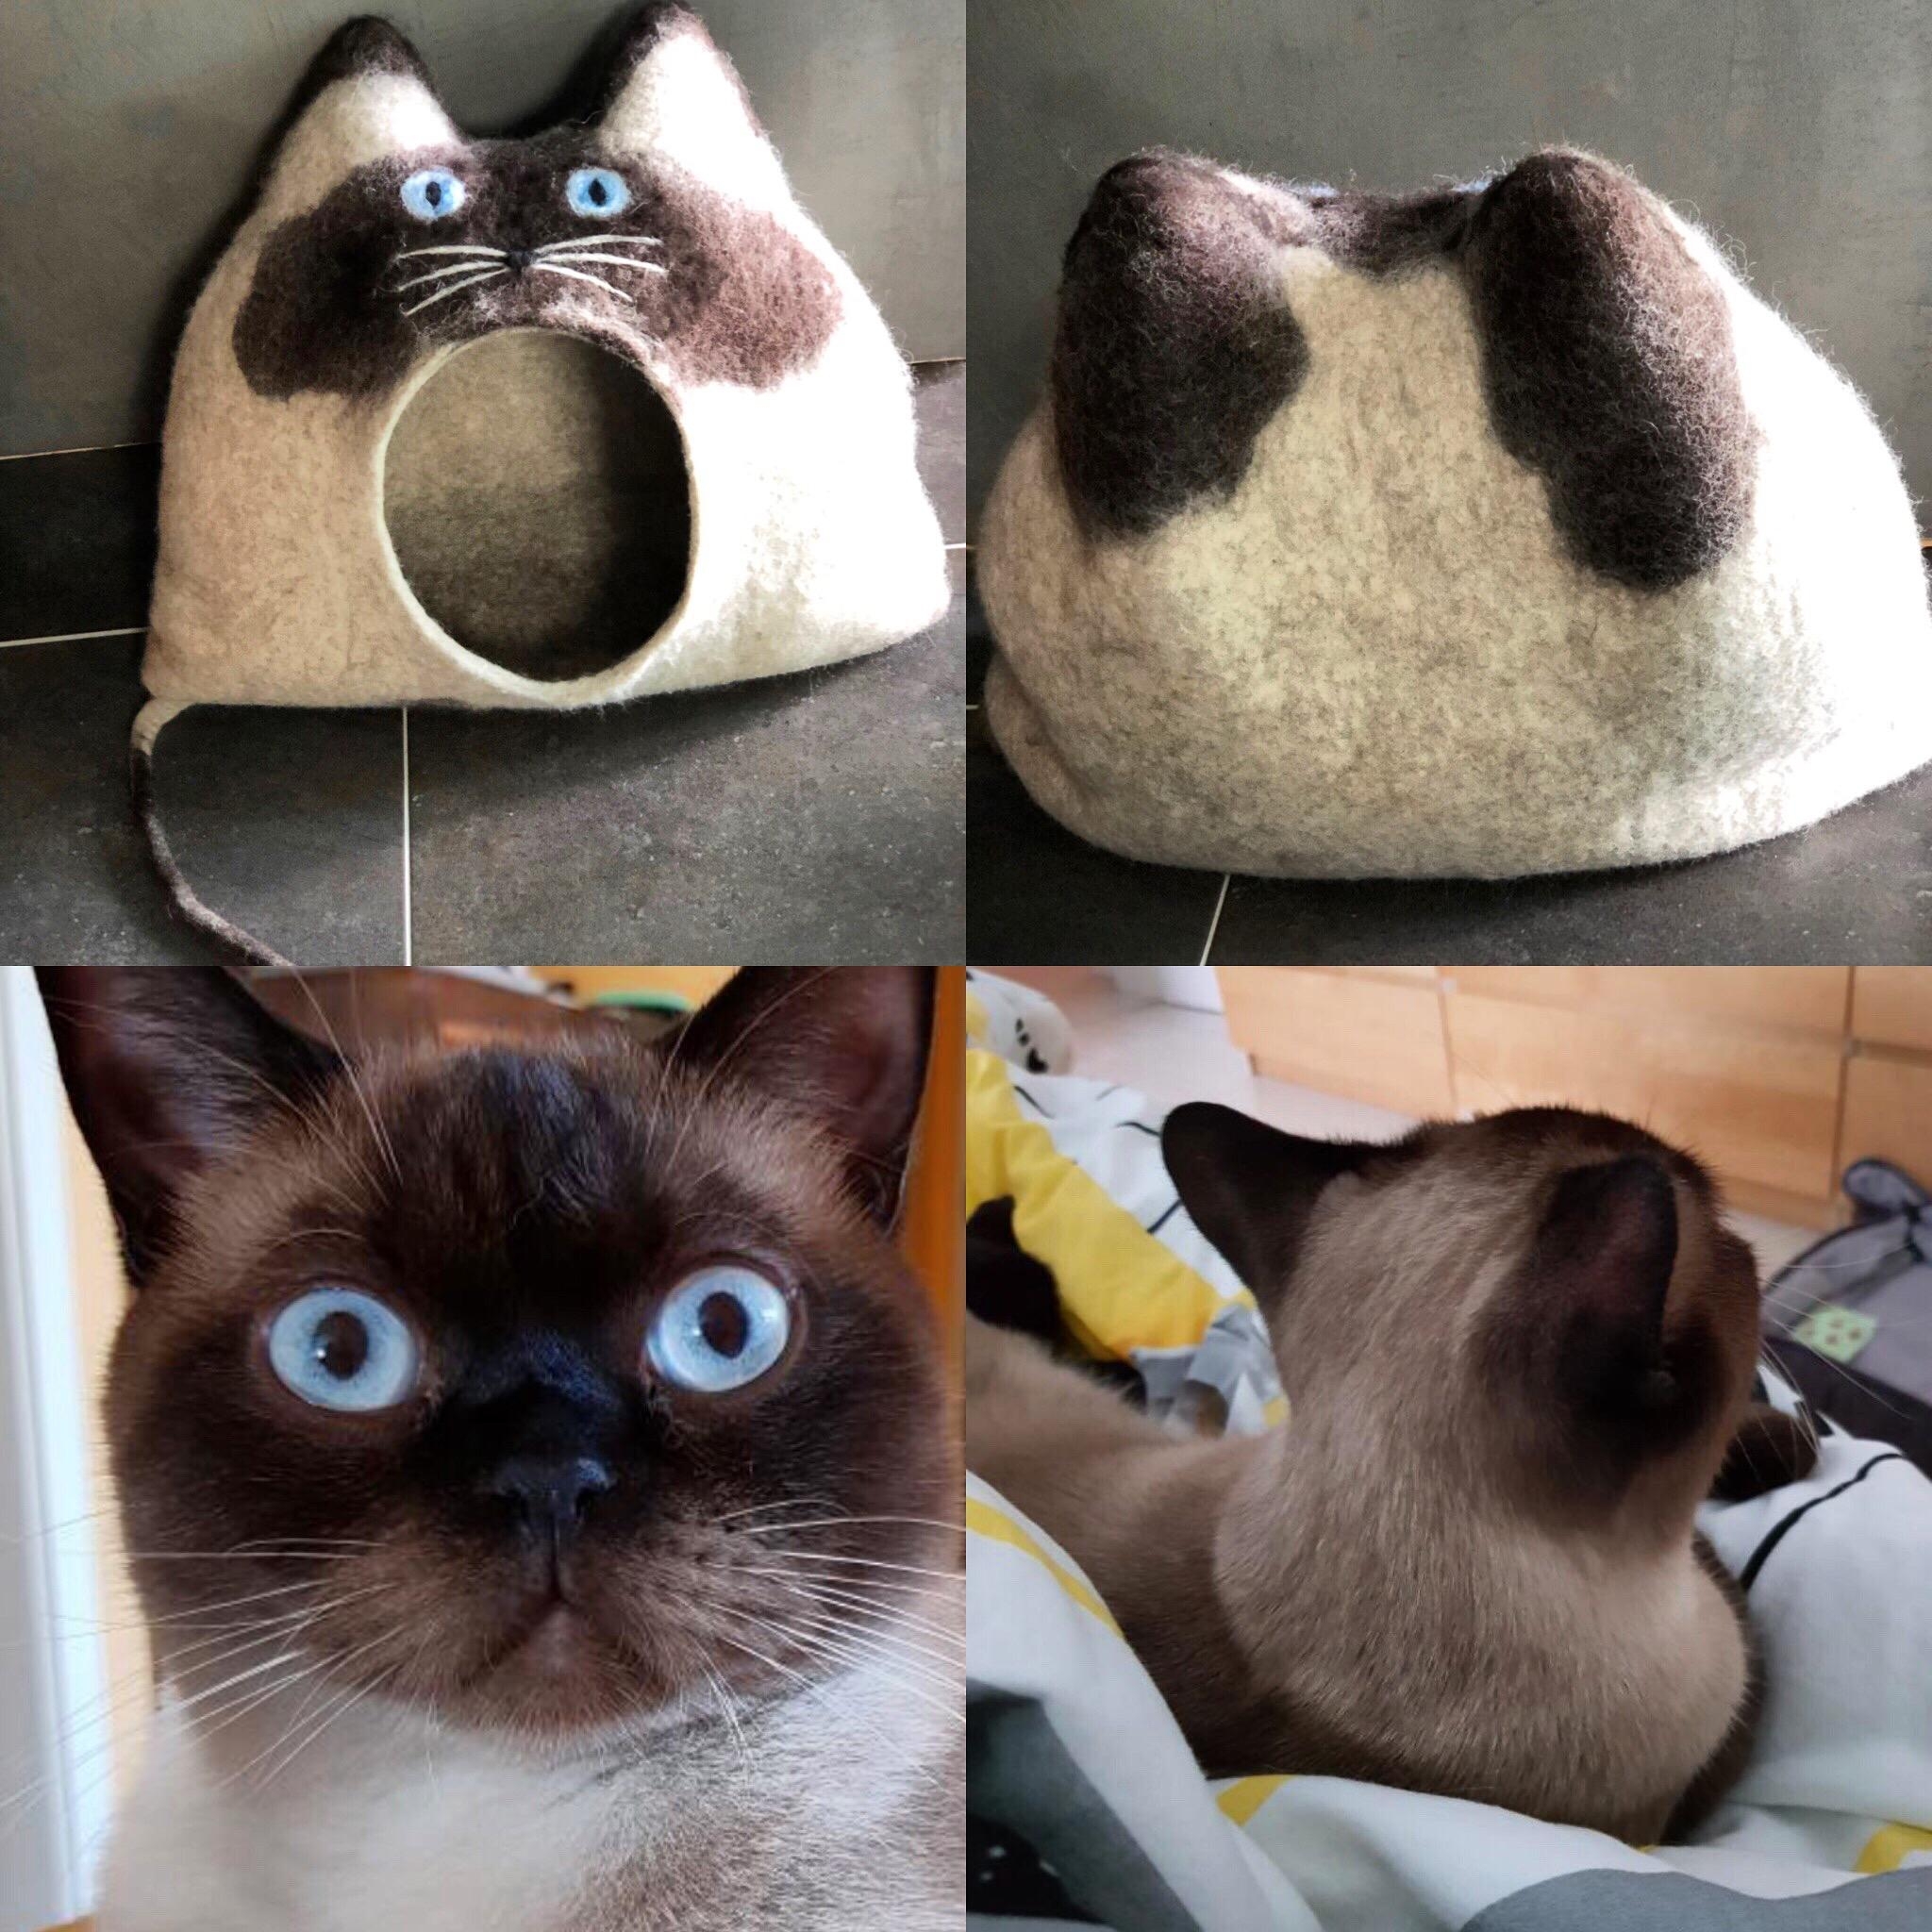 Oh, bin das ich?🥰
Ein Haus für deine Katze - Katzenhöhlen aus Schafwolle 🐑 
#katze #hygge